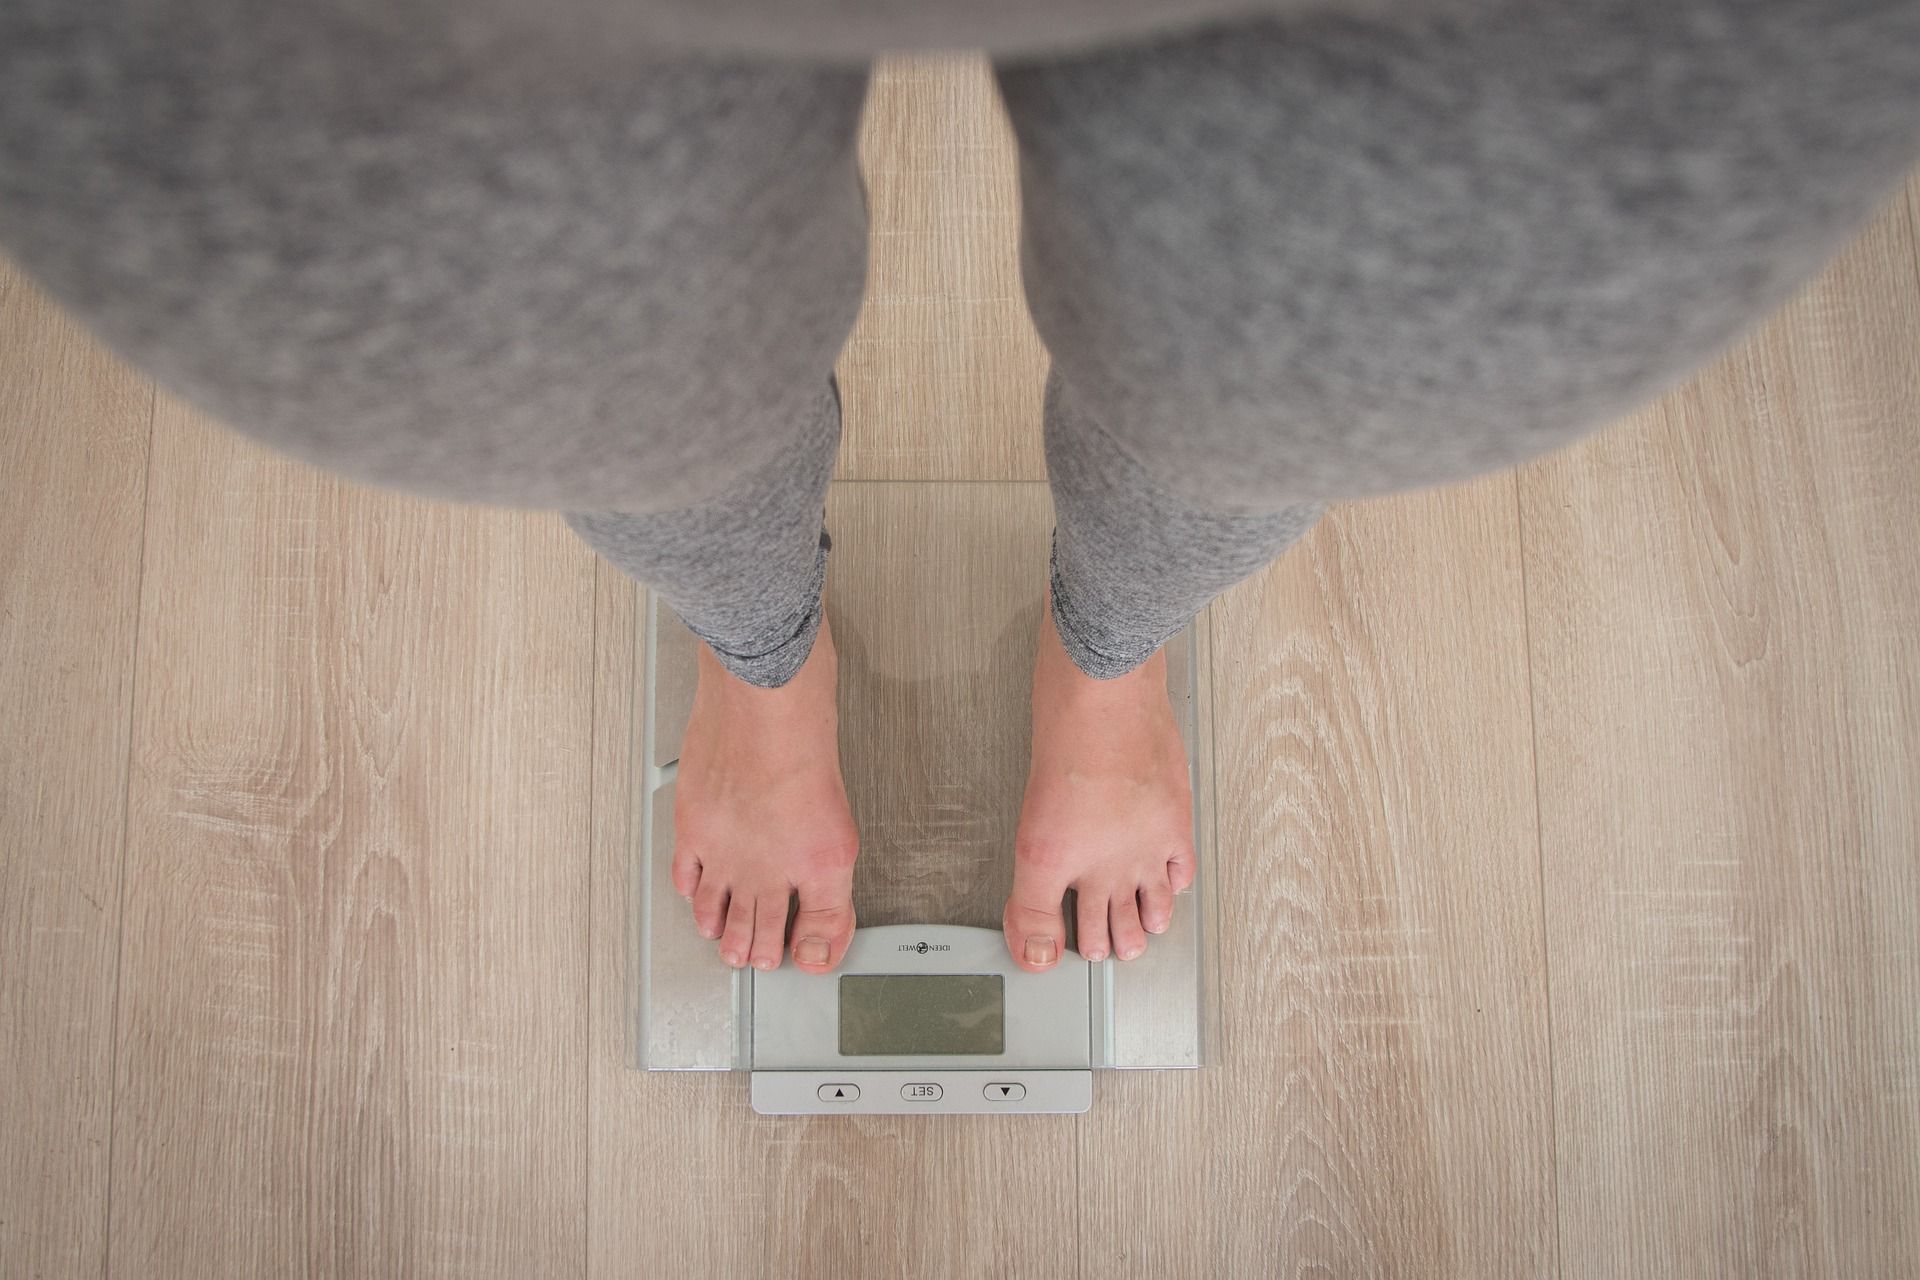 Estes 3 hábitos diários vão fazer você perder peso sem perceber